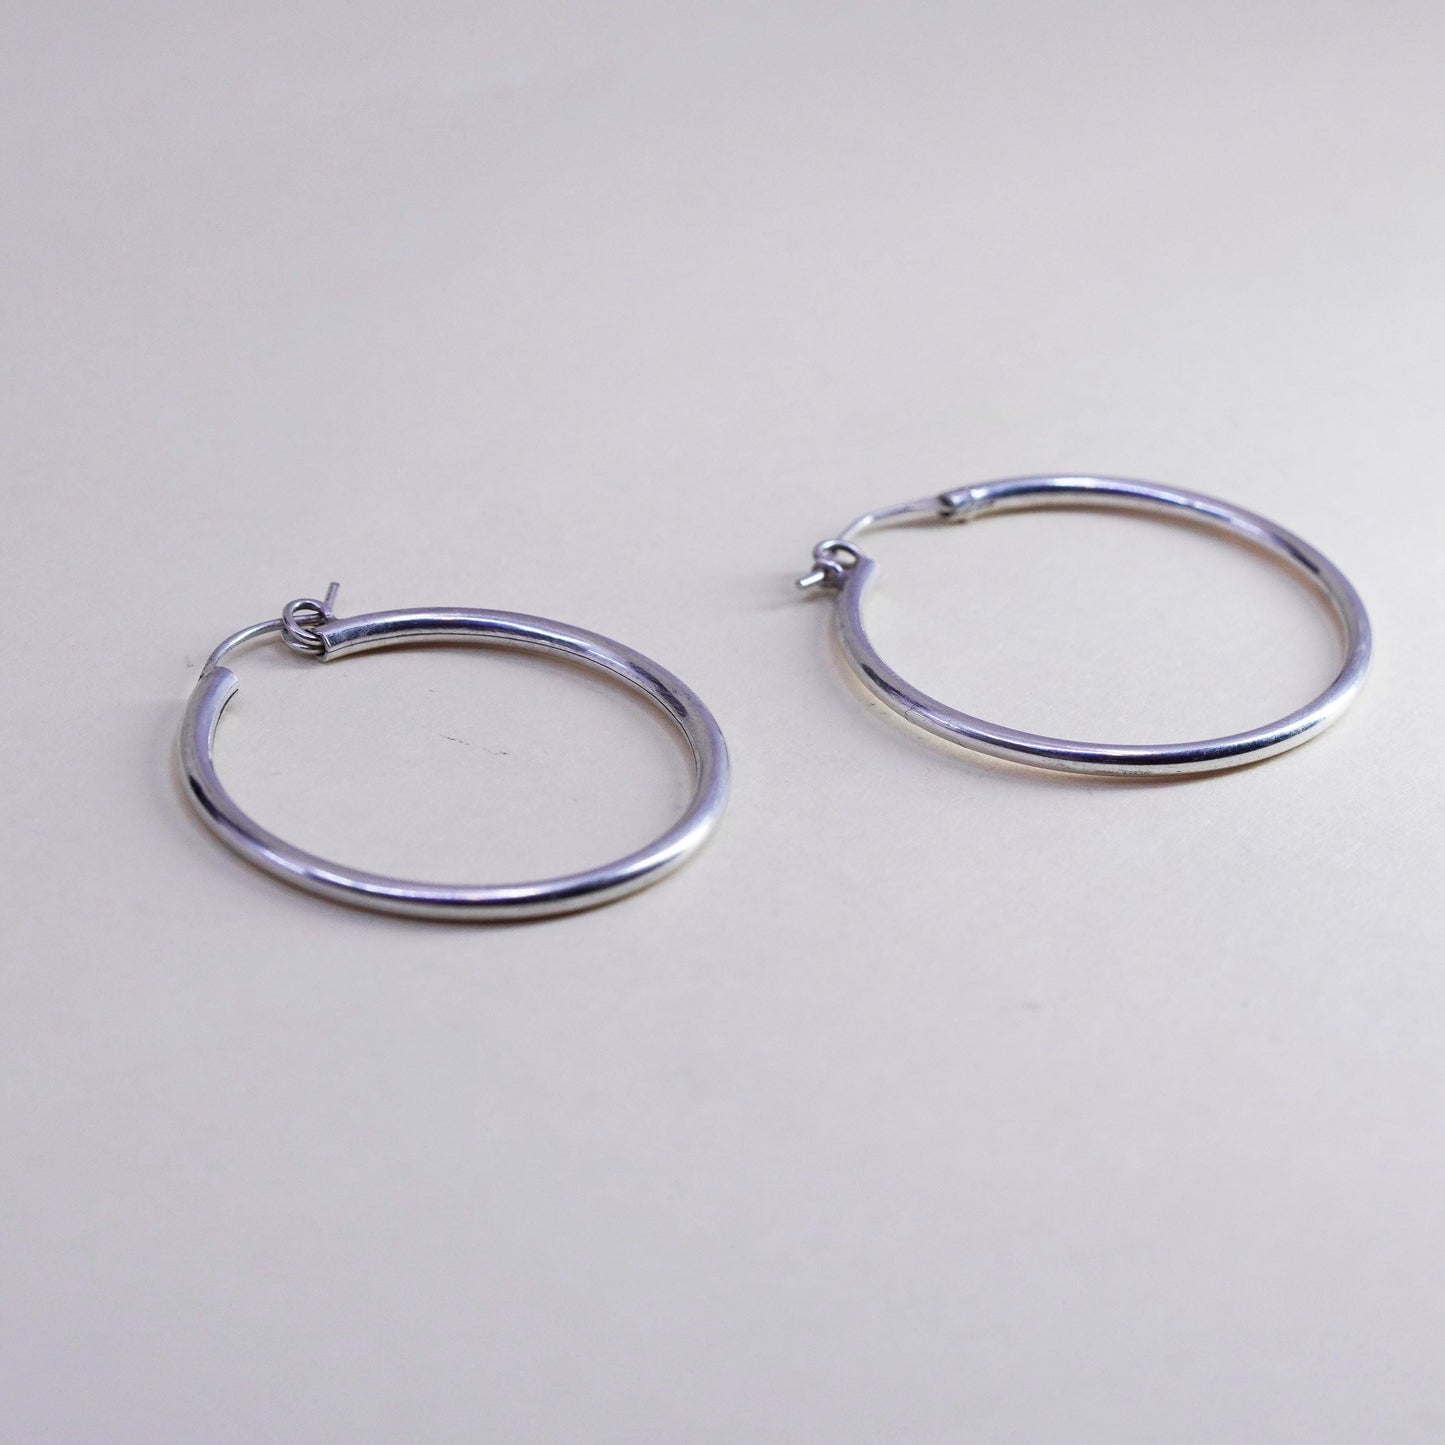 1.25”, Vintage sterling silver loop earrings, minimalist primitive hoops